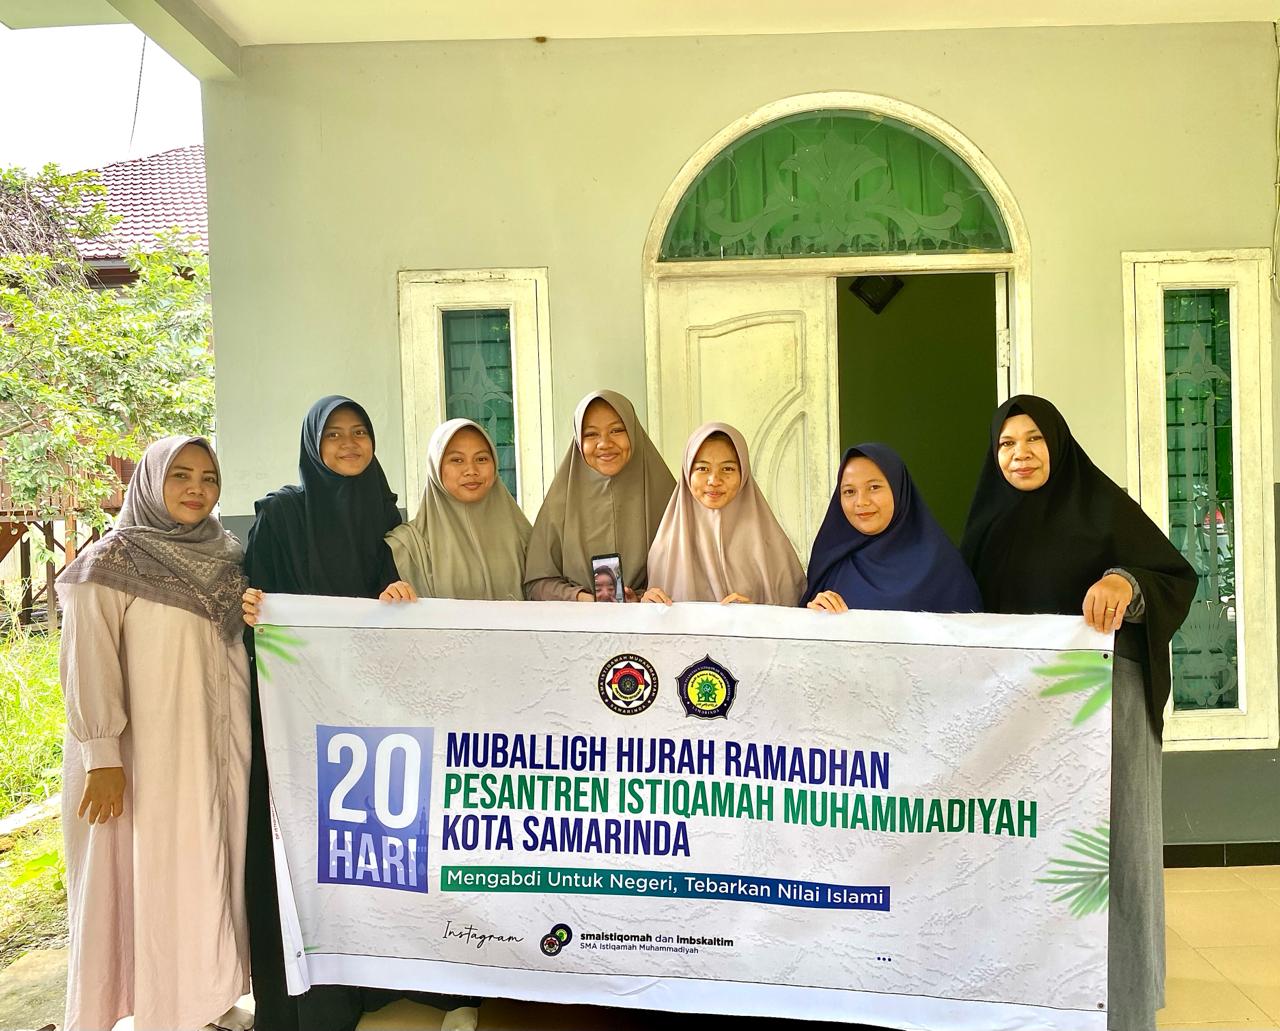 Santri SMA Istiqamah Muhammadiyah Siap “MUBALIGH HIJRAH RAMADHAN”